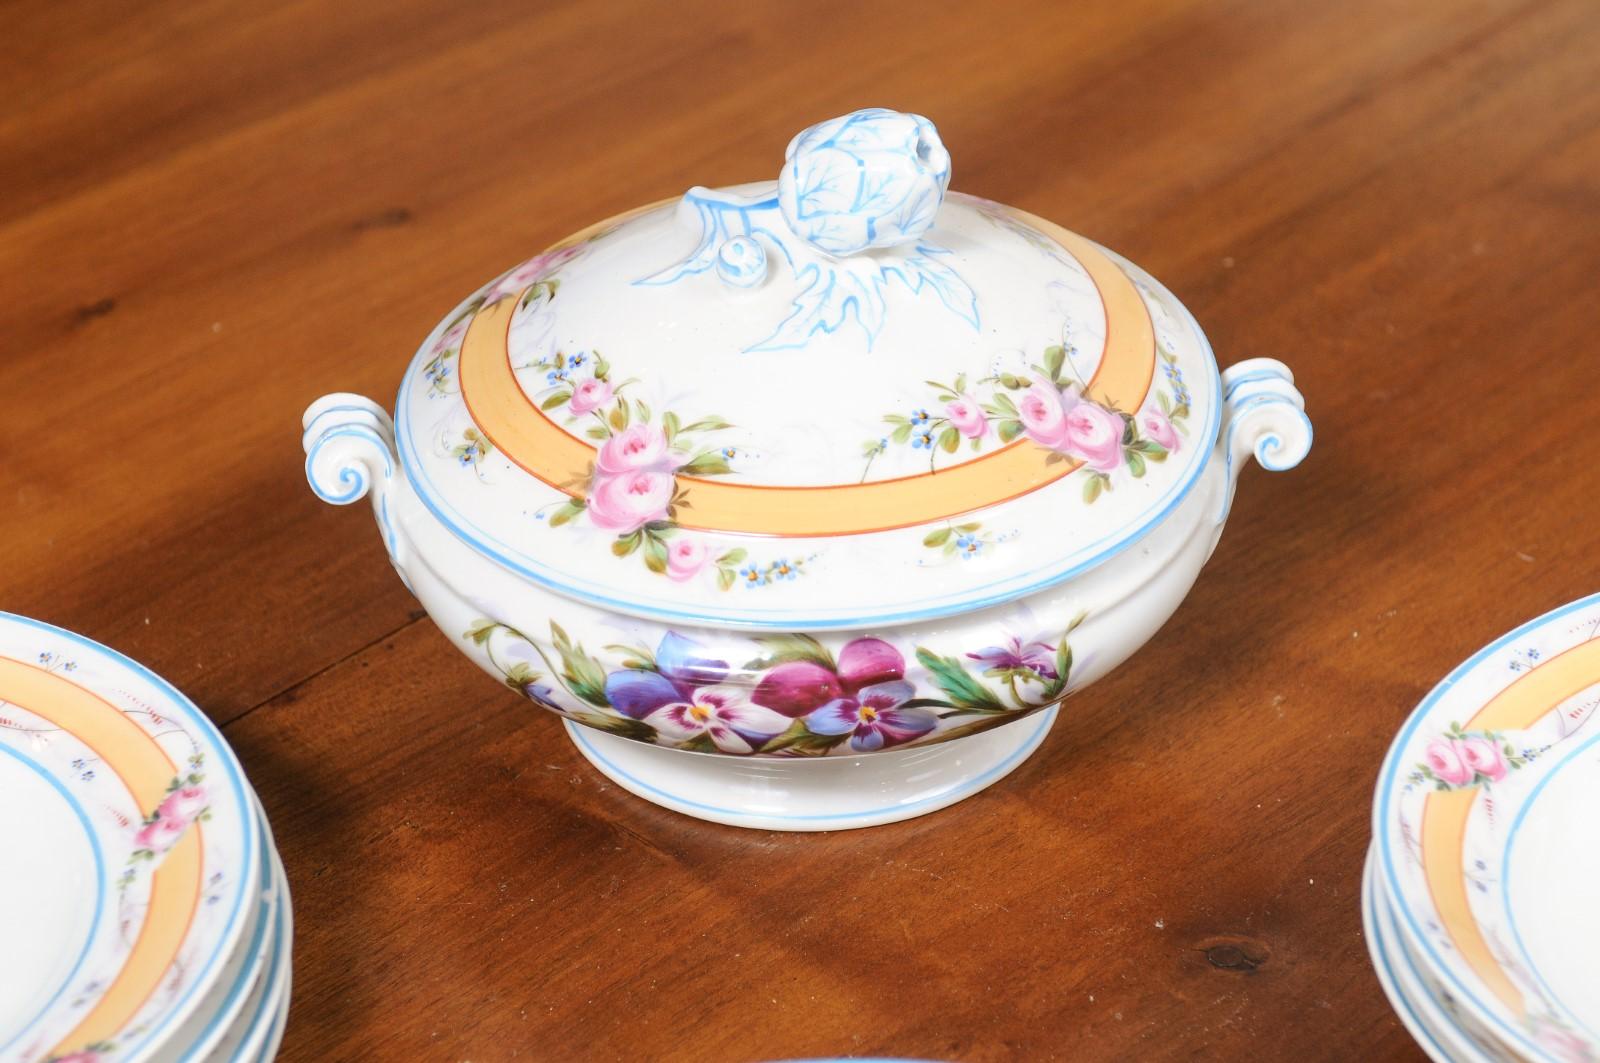 Porcelaine de Paris 19th Century Floral Dish Set with Casserole and Plates 2